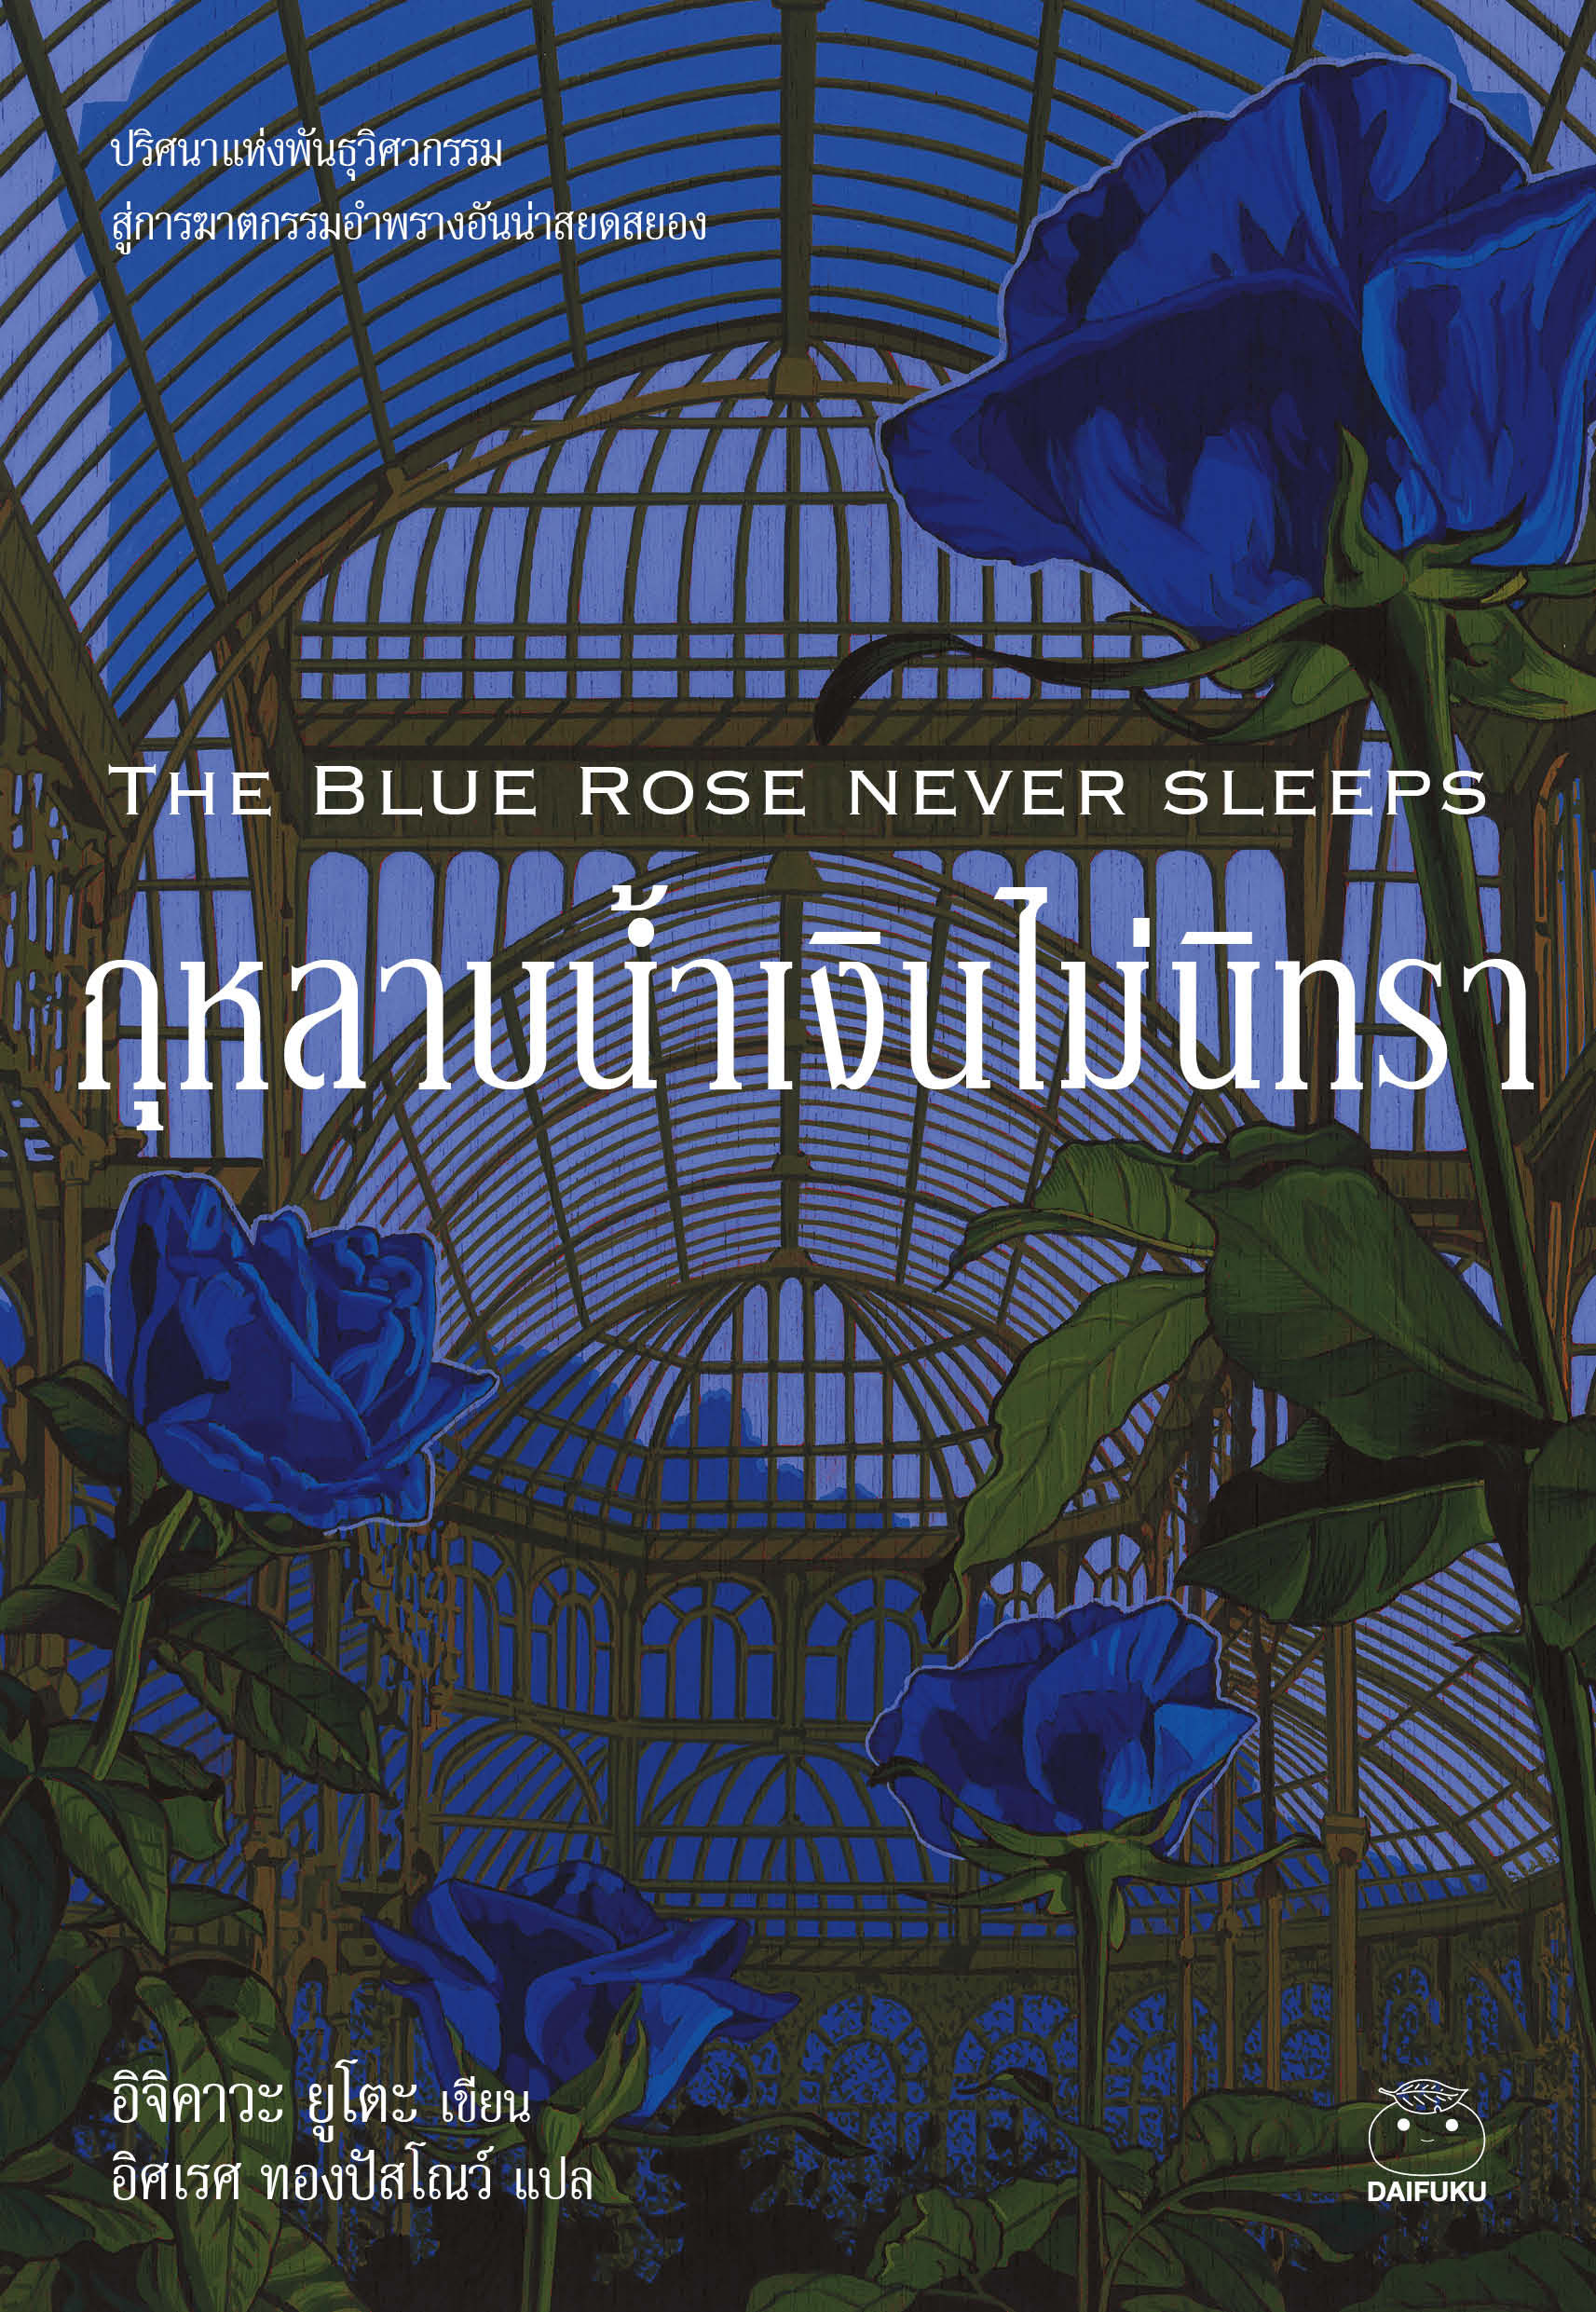 กุหลาบน้ำเงินไม่นิทรา  The Blue rose never sleeps 